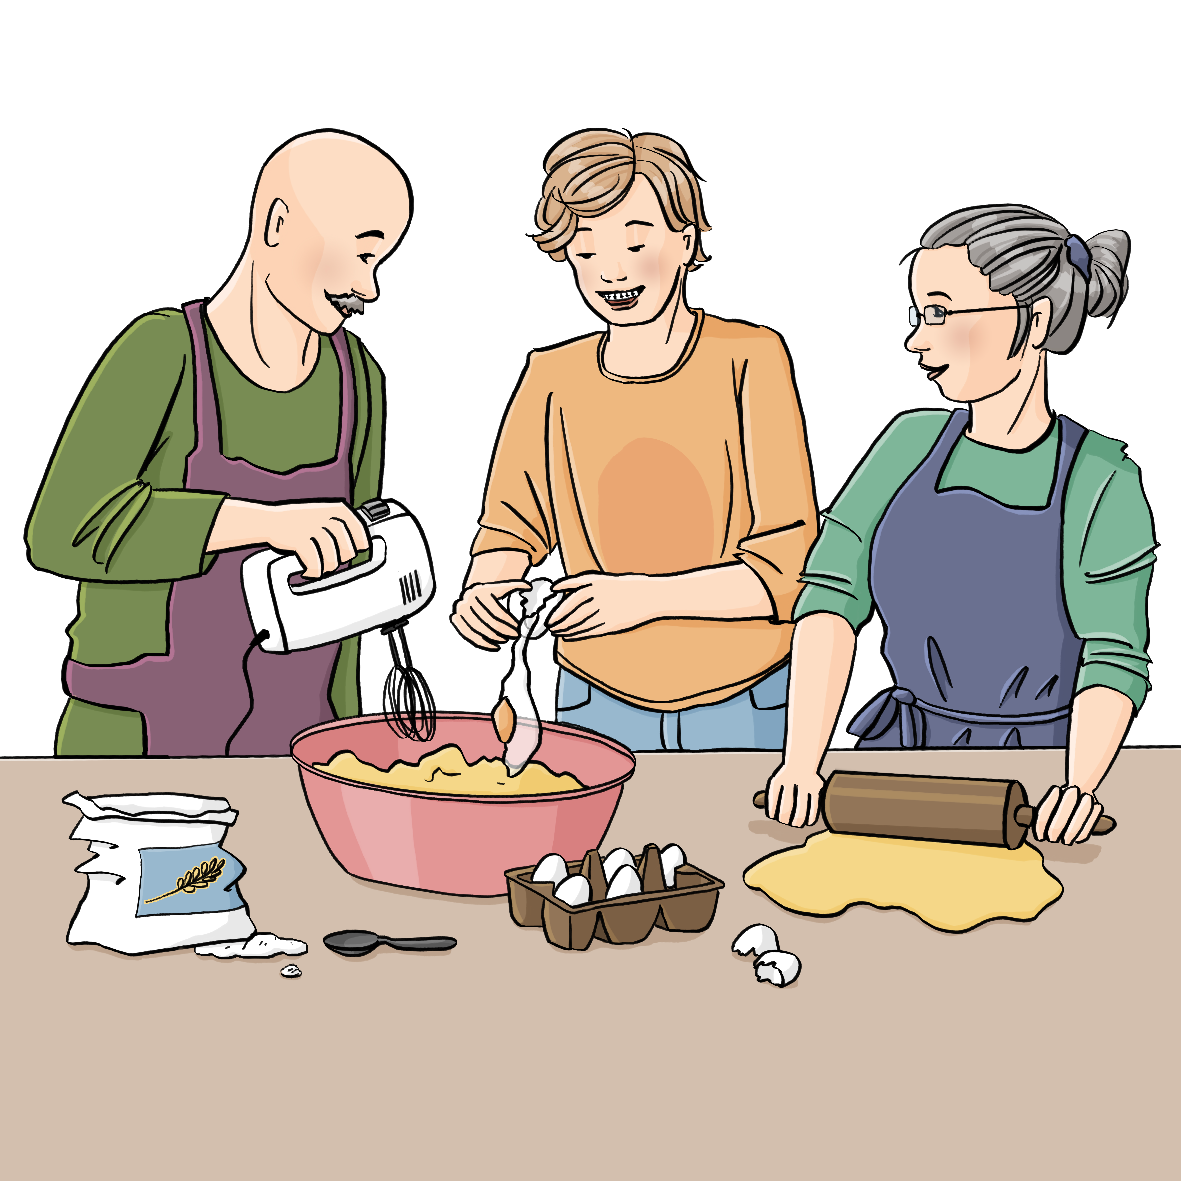 Ein Mann, eine Frau und ein Jugendlicher backen zusammen: Der Mann rührt mit einem Mixer in einer Schüssel, der Jugendliche schlägt ein Ei in die Schüssel. Die Frau rollt Teig aus. Auf dem Tisch vor ihnen sind Eier und ein Paket Mehl. 